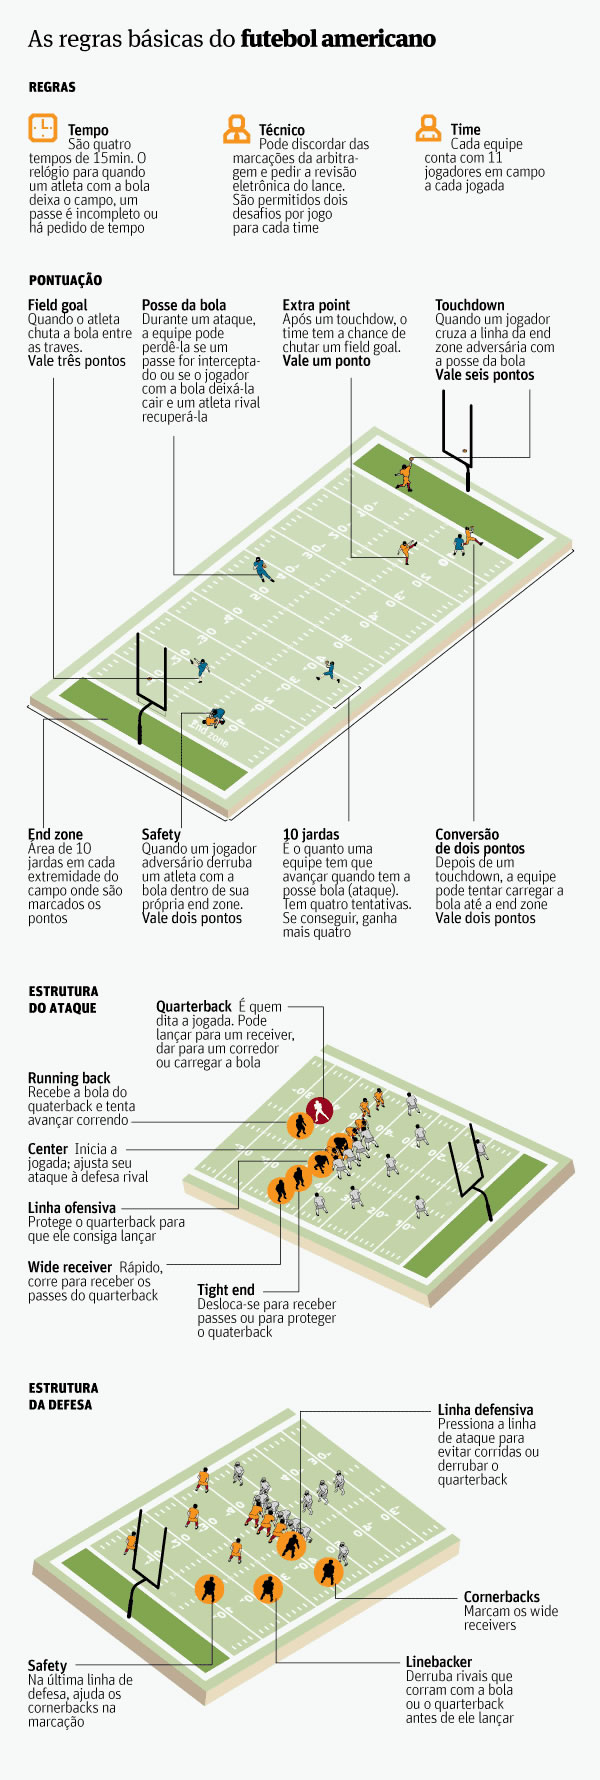 Entenda regras básicas de como funciona um jogo de futebol americano